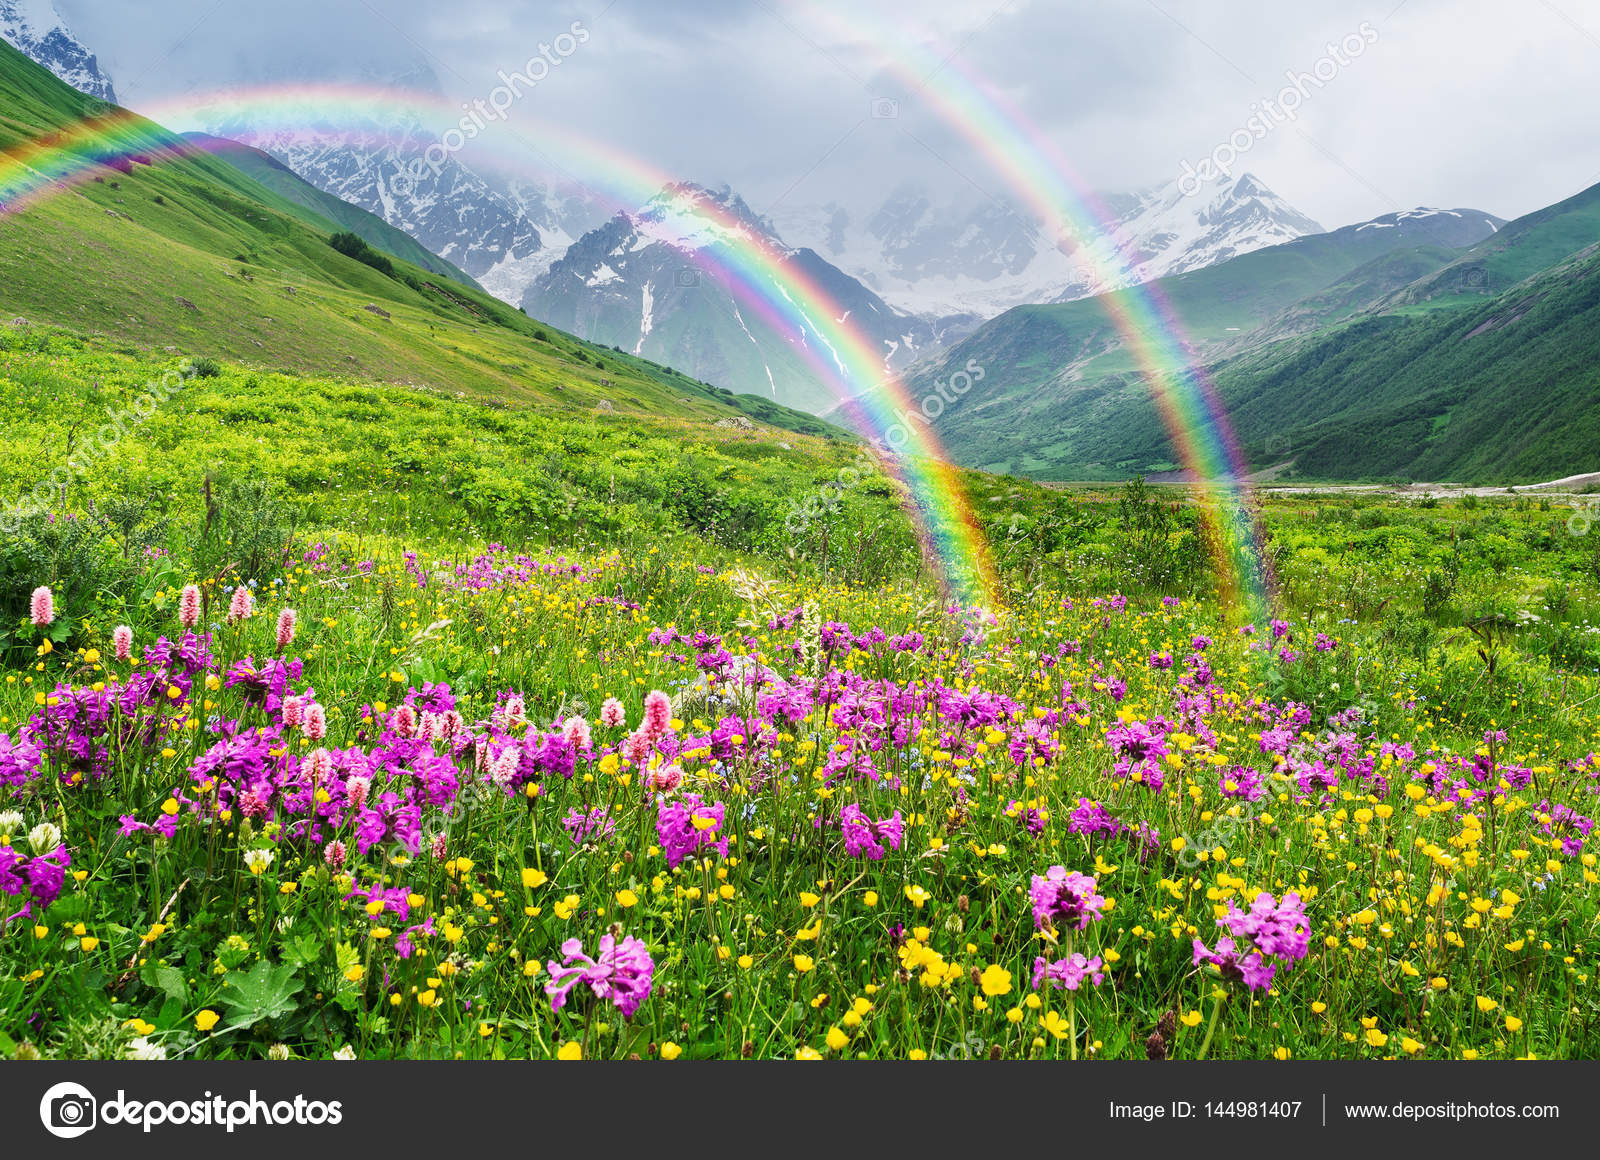 Double Rainbow & FLowers.jpg